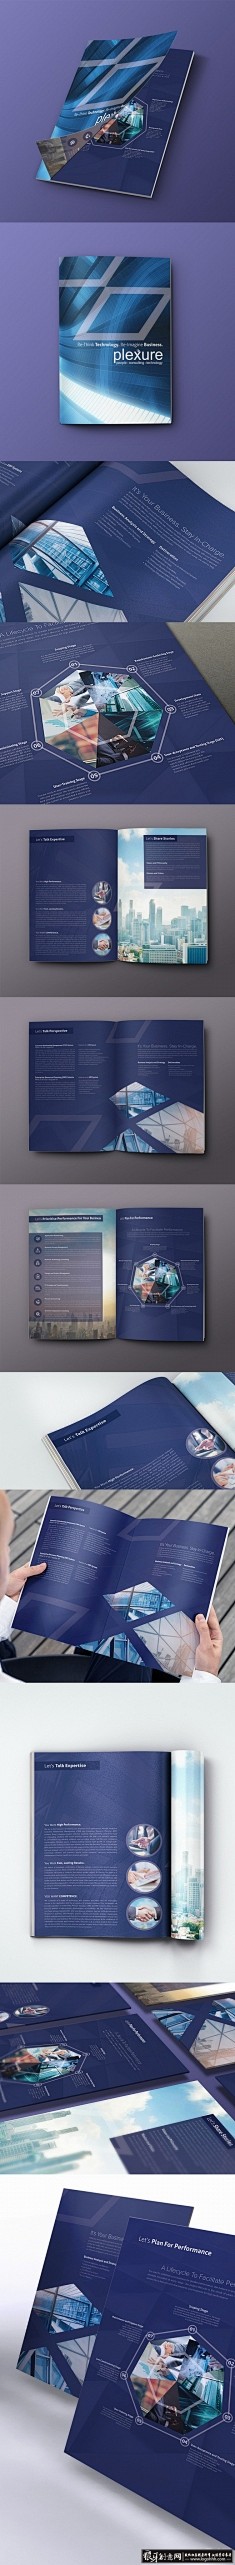 欧美商务科技画册设计 企业画册 企业宣传...